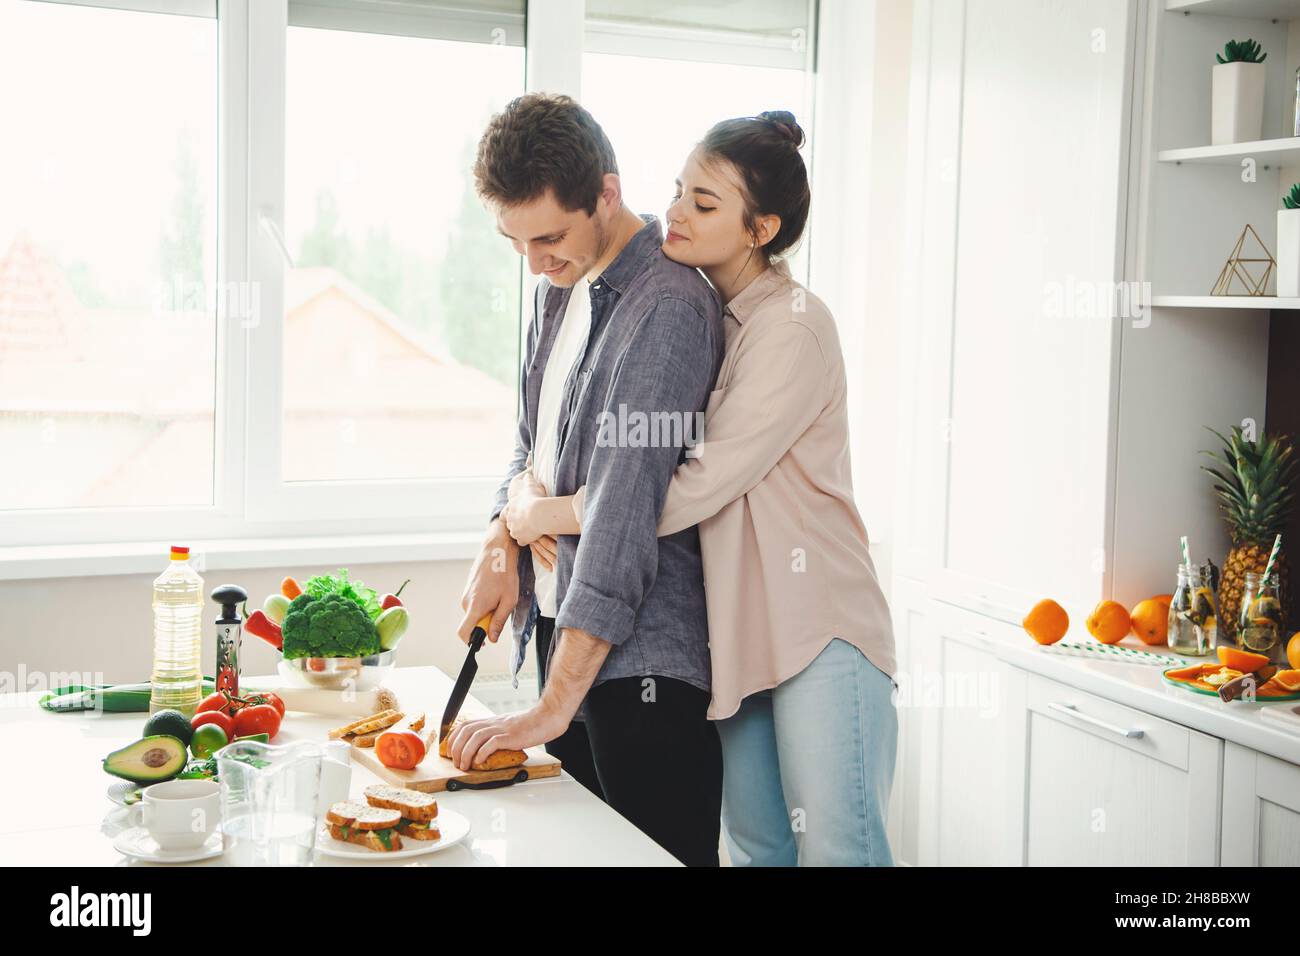 Une jeune amie embrasse son petit ami pendant qu'il coupe du pain dans la cuisine.Des aliments sains végétariens.Cuisiner ensemble.Un mode de vie sain.Famille Banque D'Images